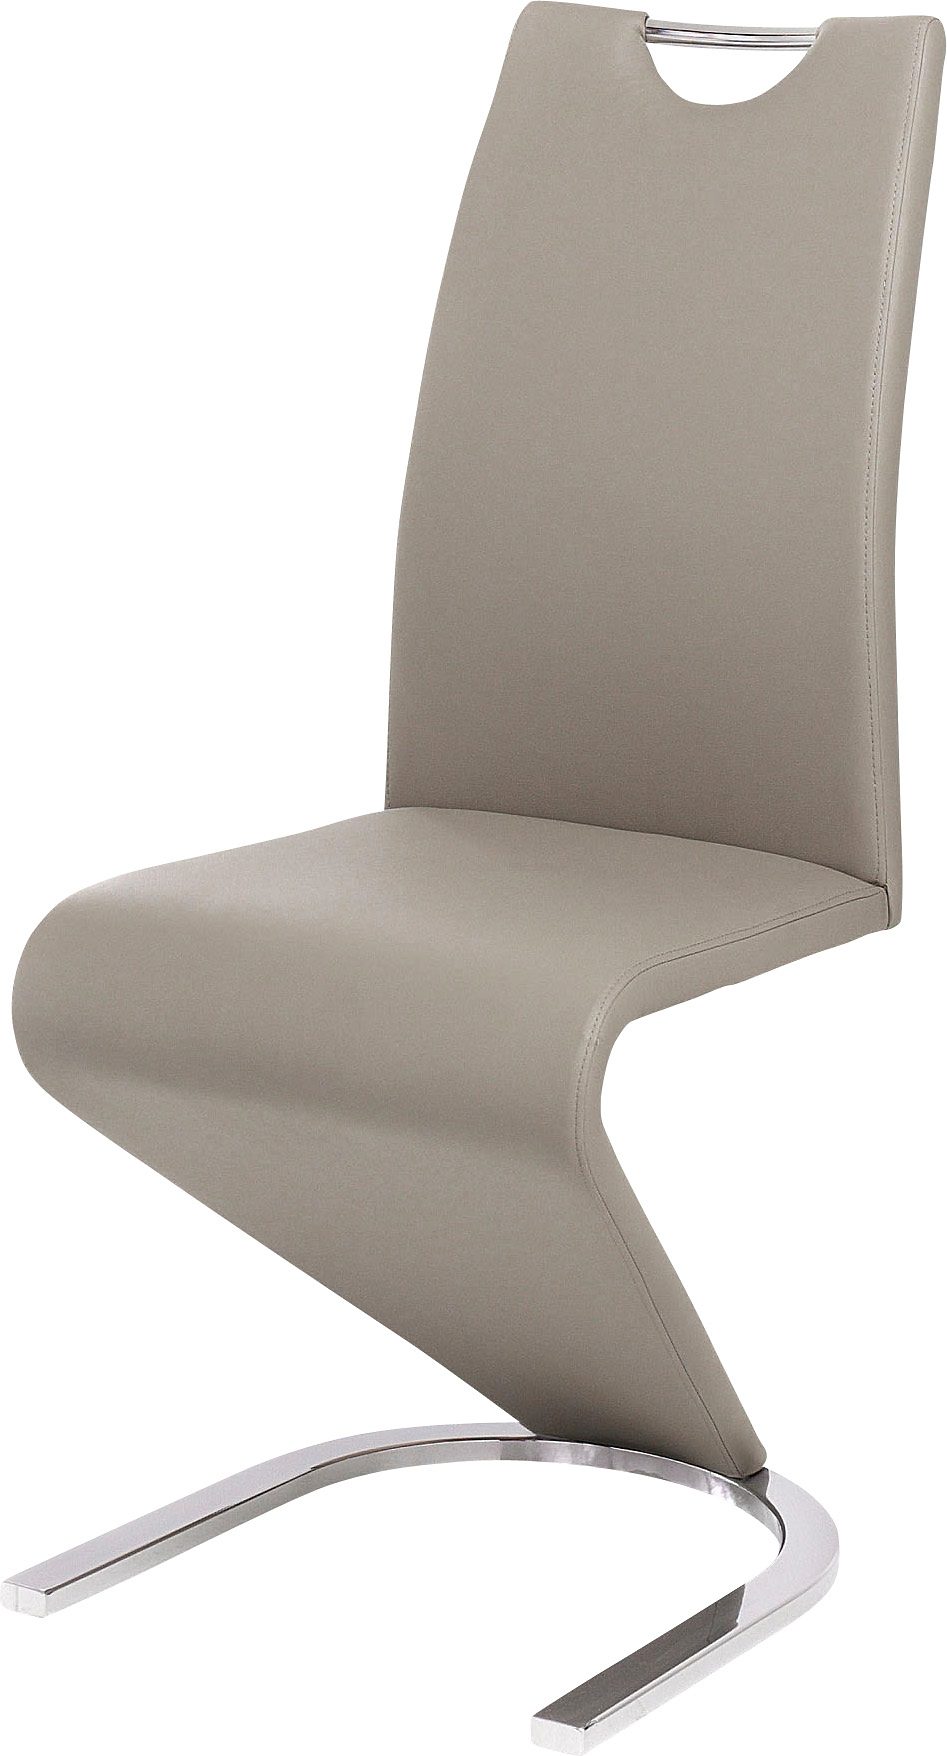 Eetkamerstoelen Vrijdragende stoel in Z-model in set van 2 508119